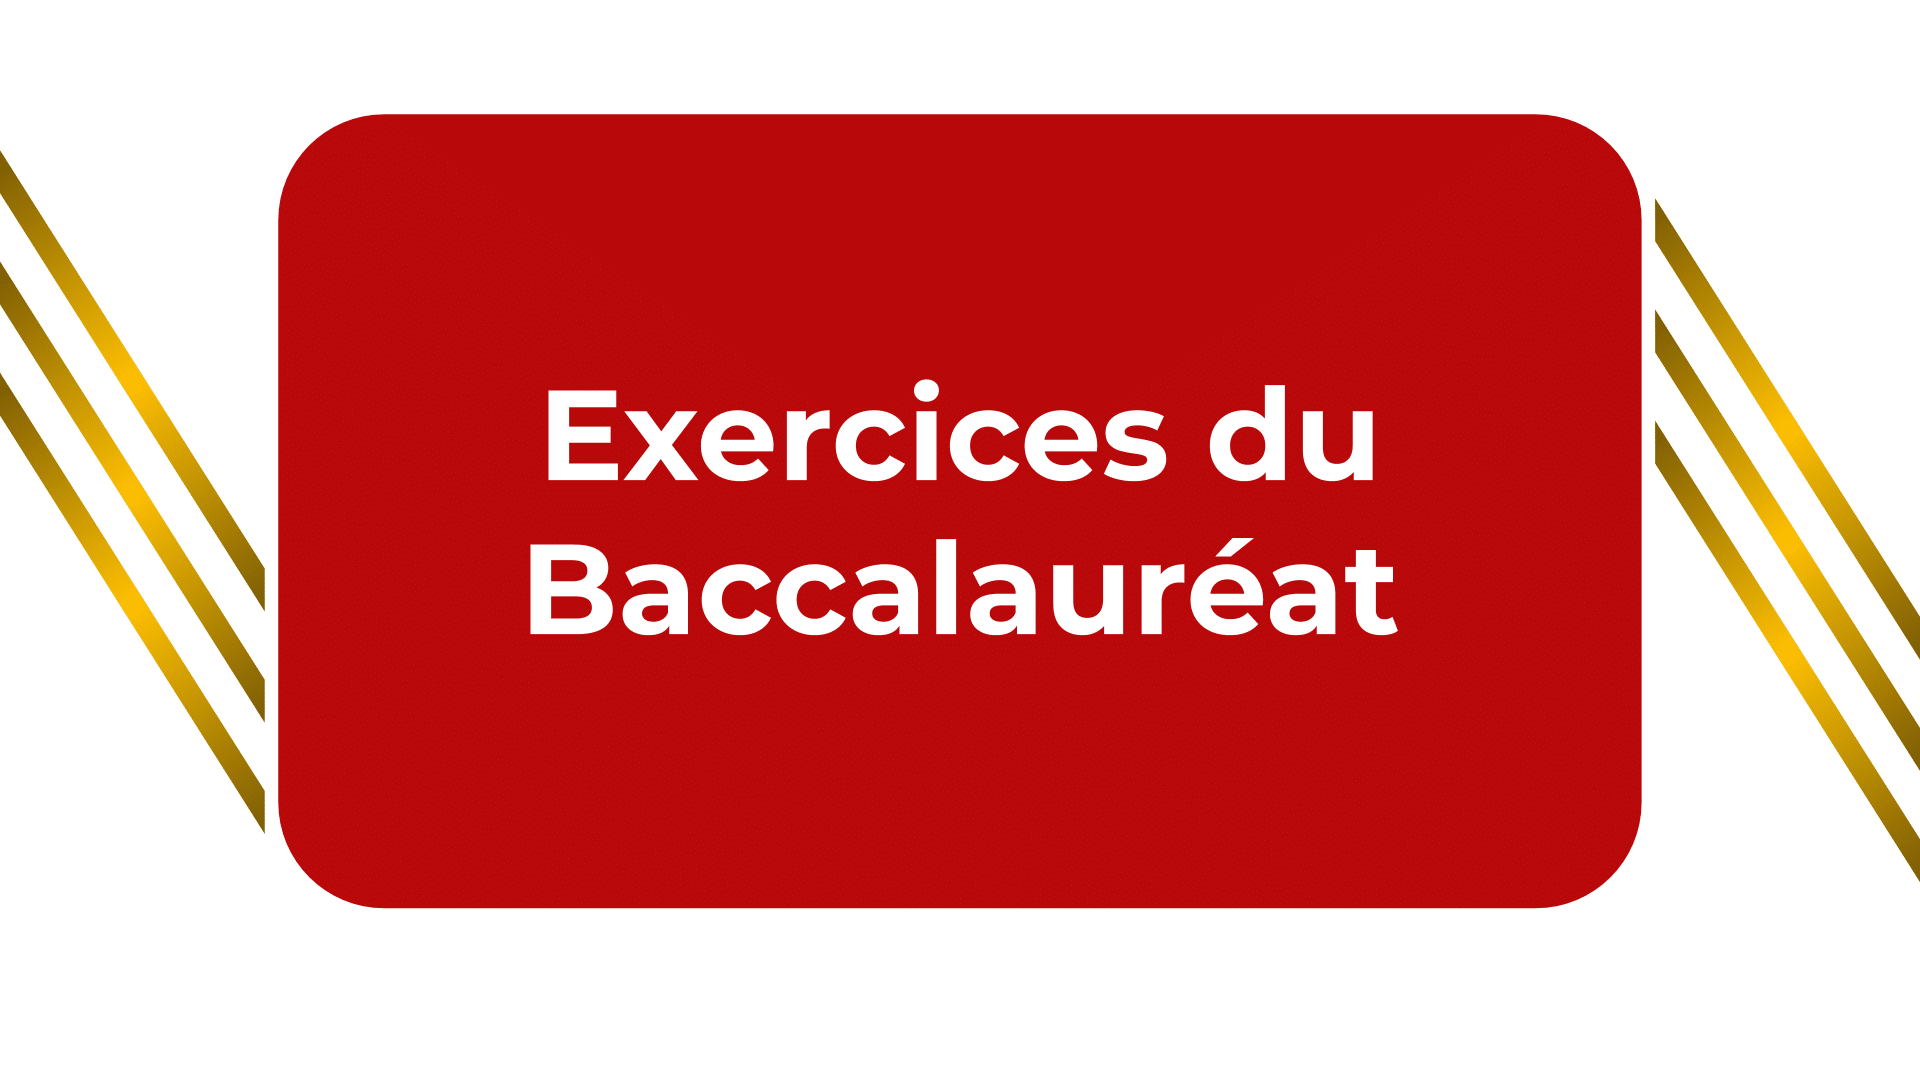 Exercices du Baccalauréat - Sujets et corrigés des exercices